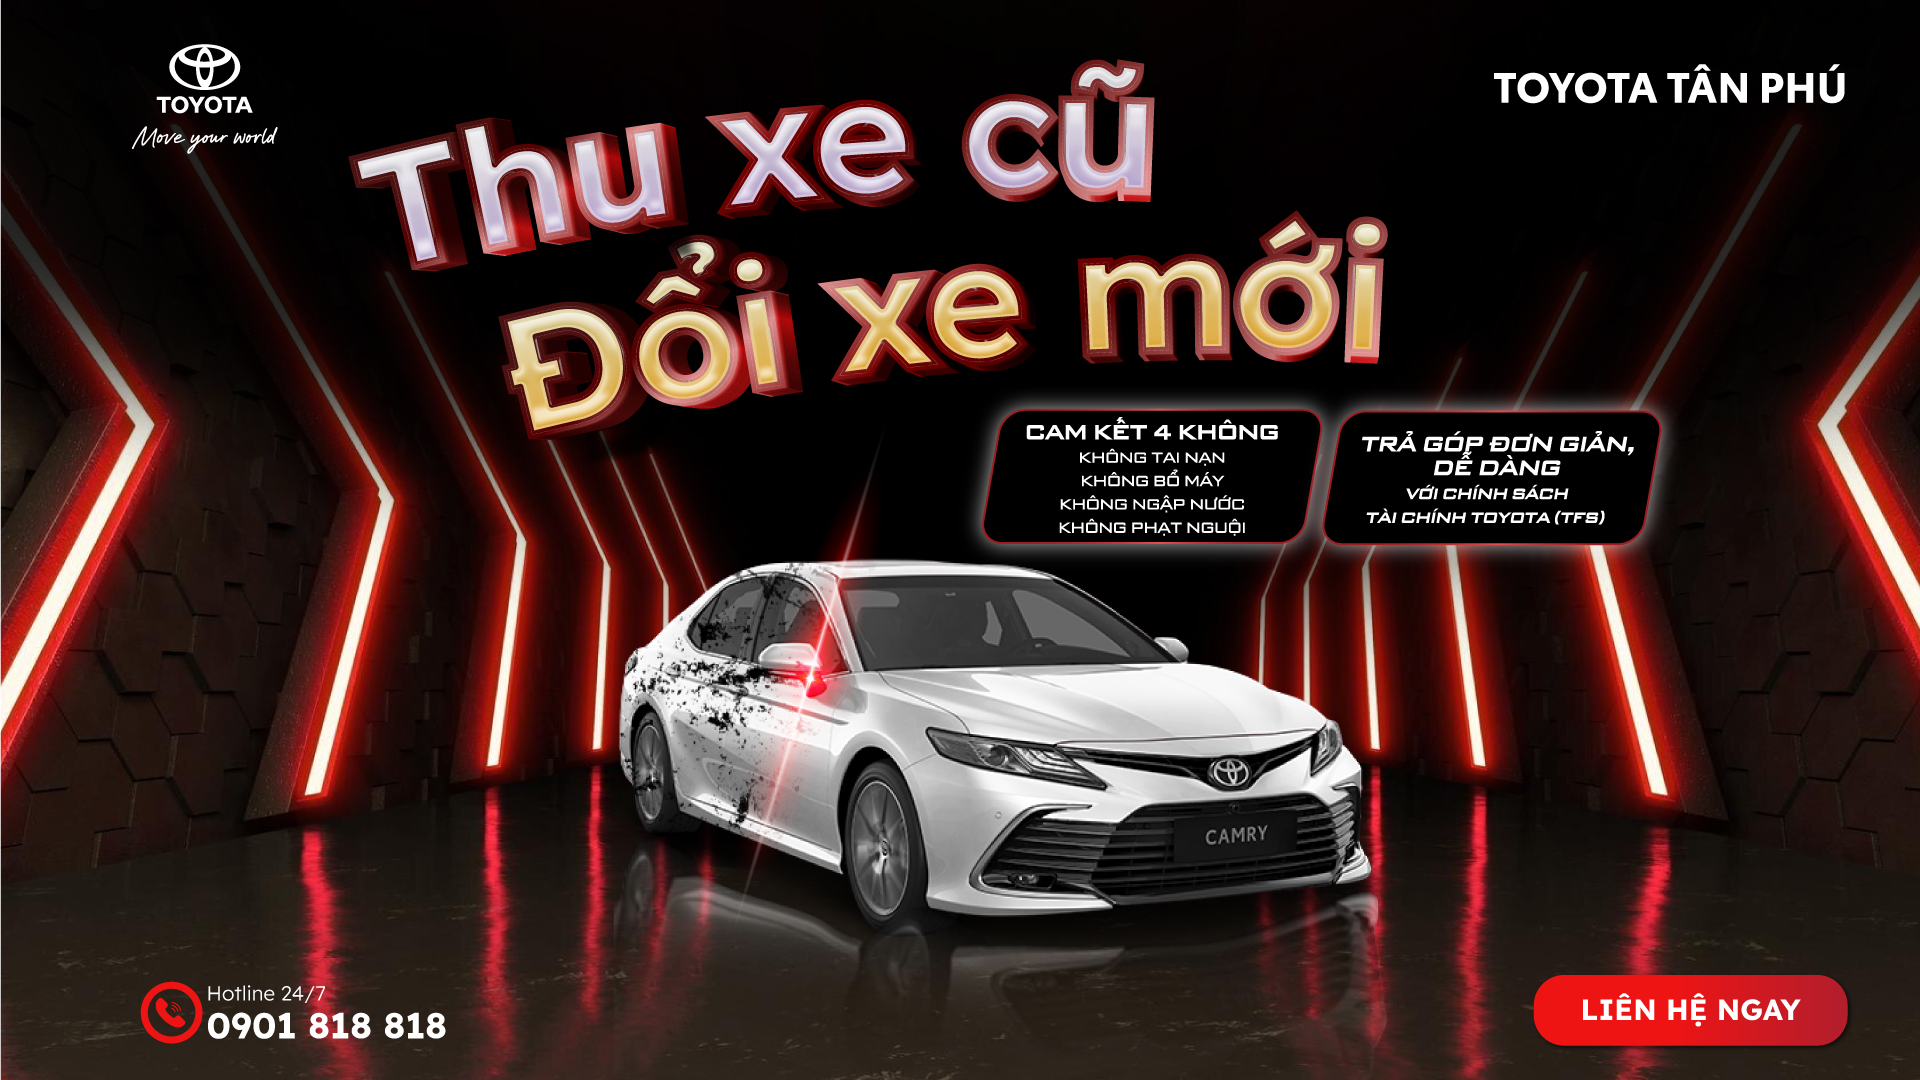 You are currently viewing Chương trình “Thu cũ đổi mới” tại Toyota Tân Phú – Cơ hội tuyệt vời để nâng cấp xe yêu của bạn